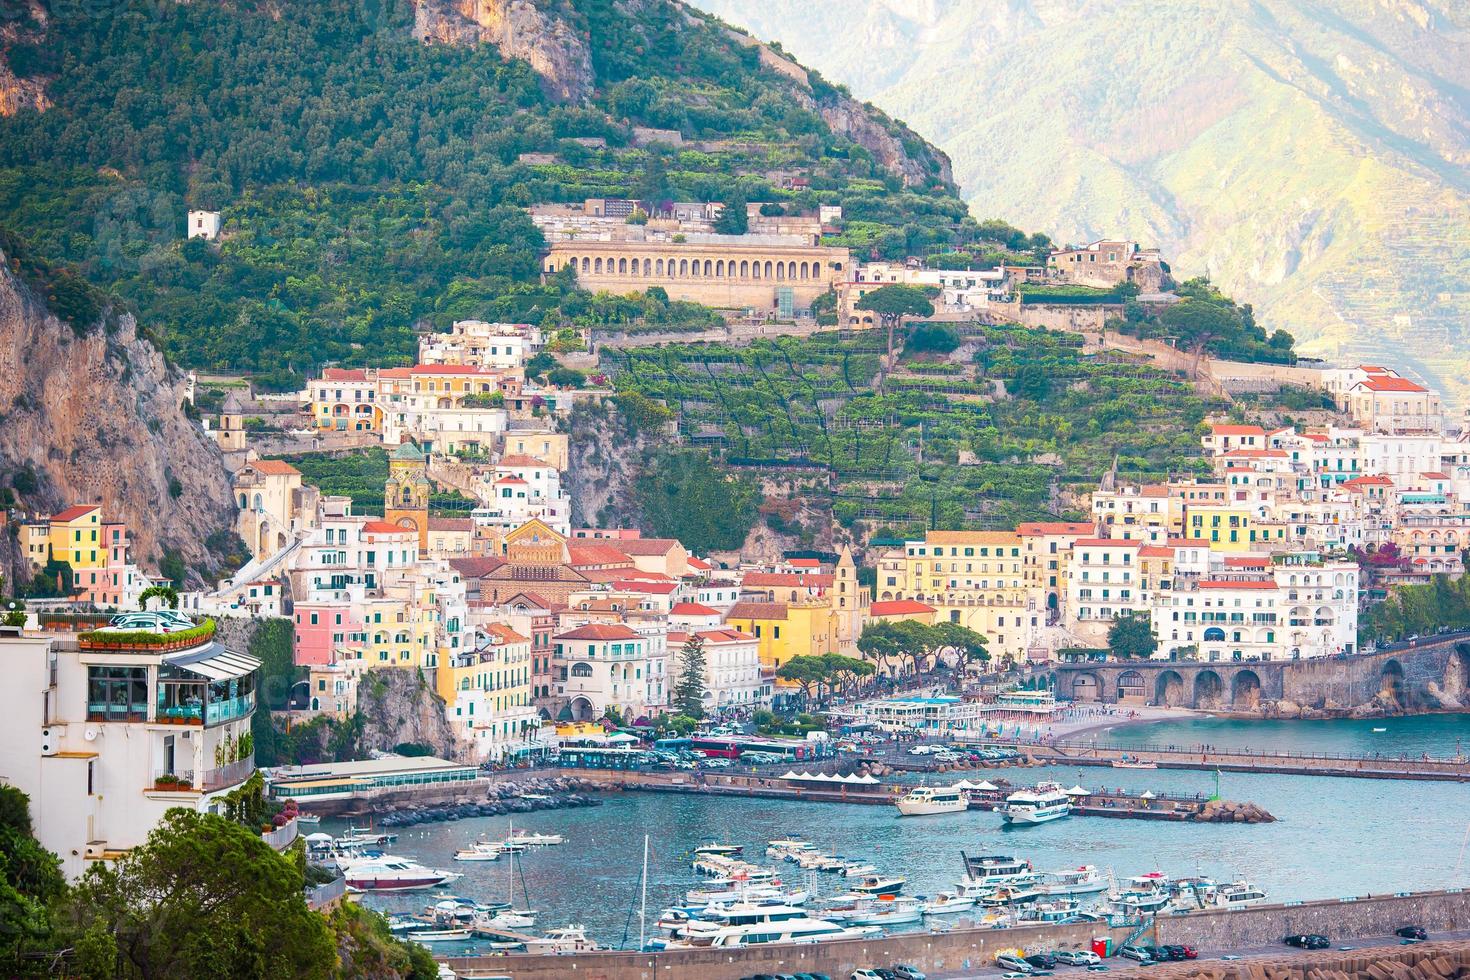 belles villes côtières d'italie - village pittoresque d'amalfi sur la côte amalfitaine photo